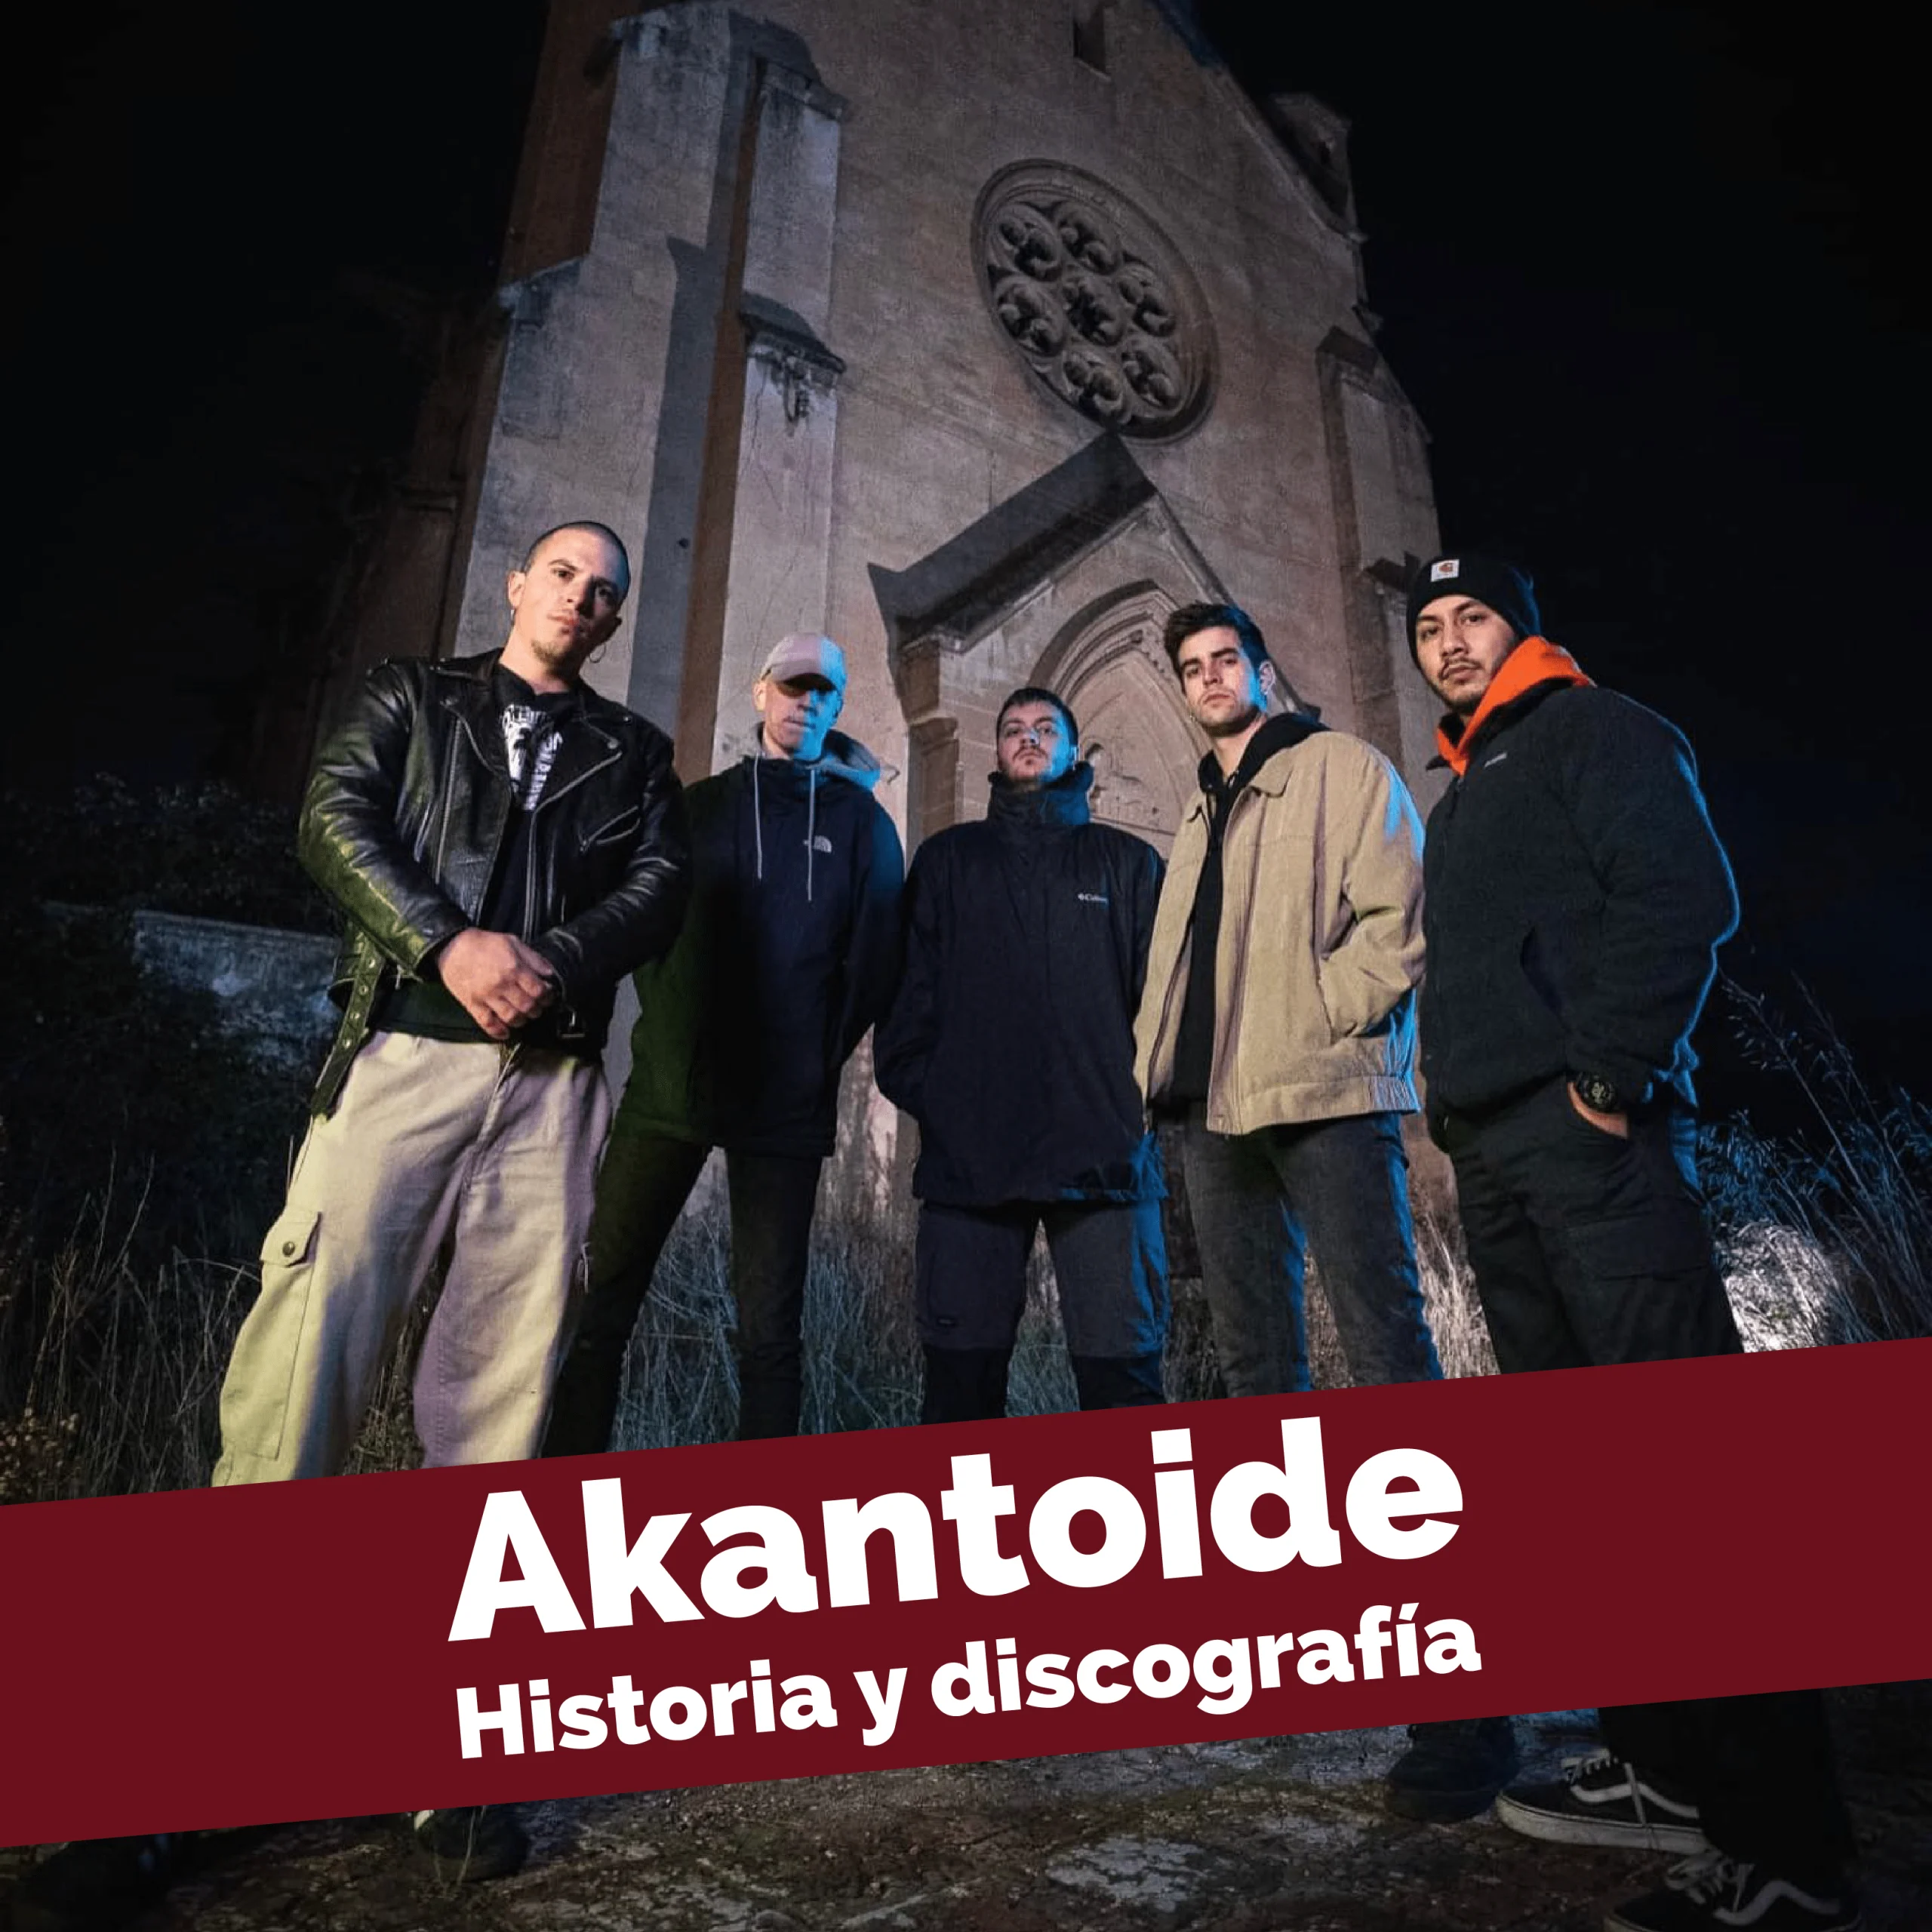 La banda Akantoide de Barcelona